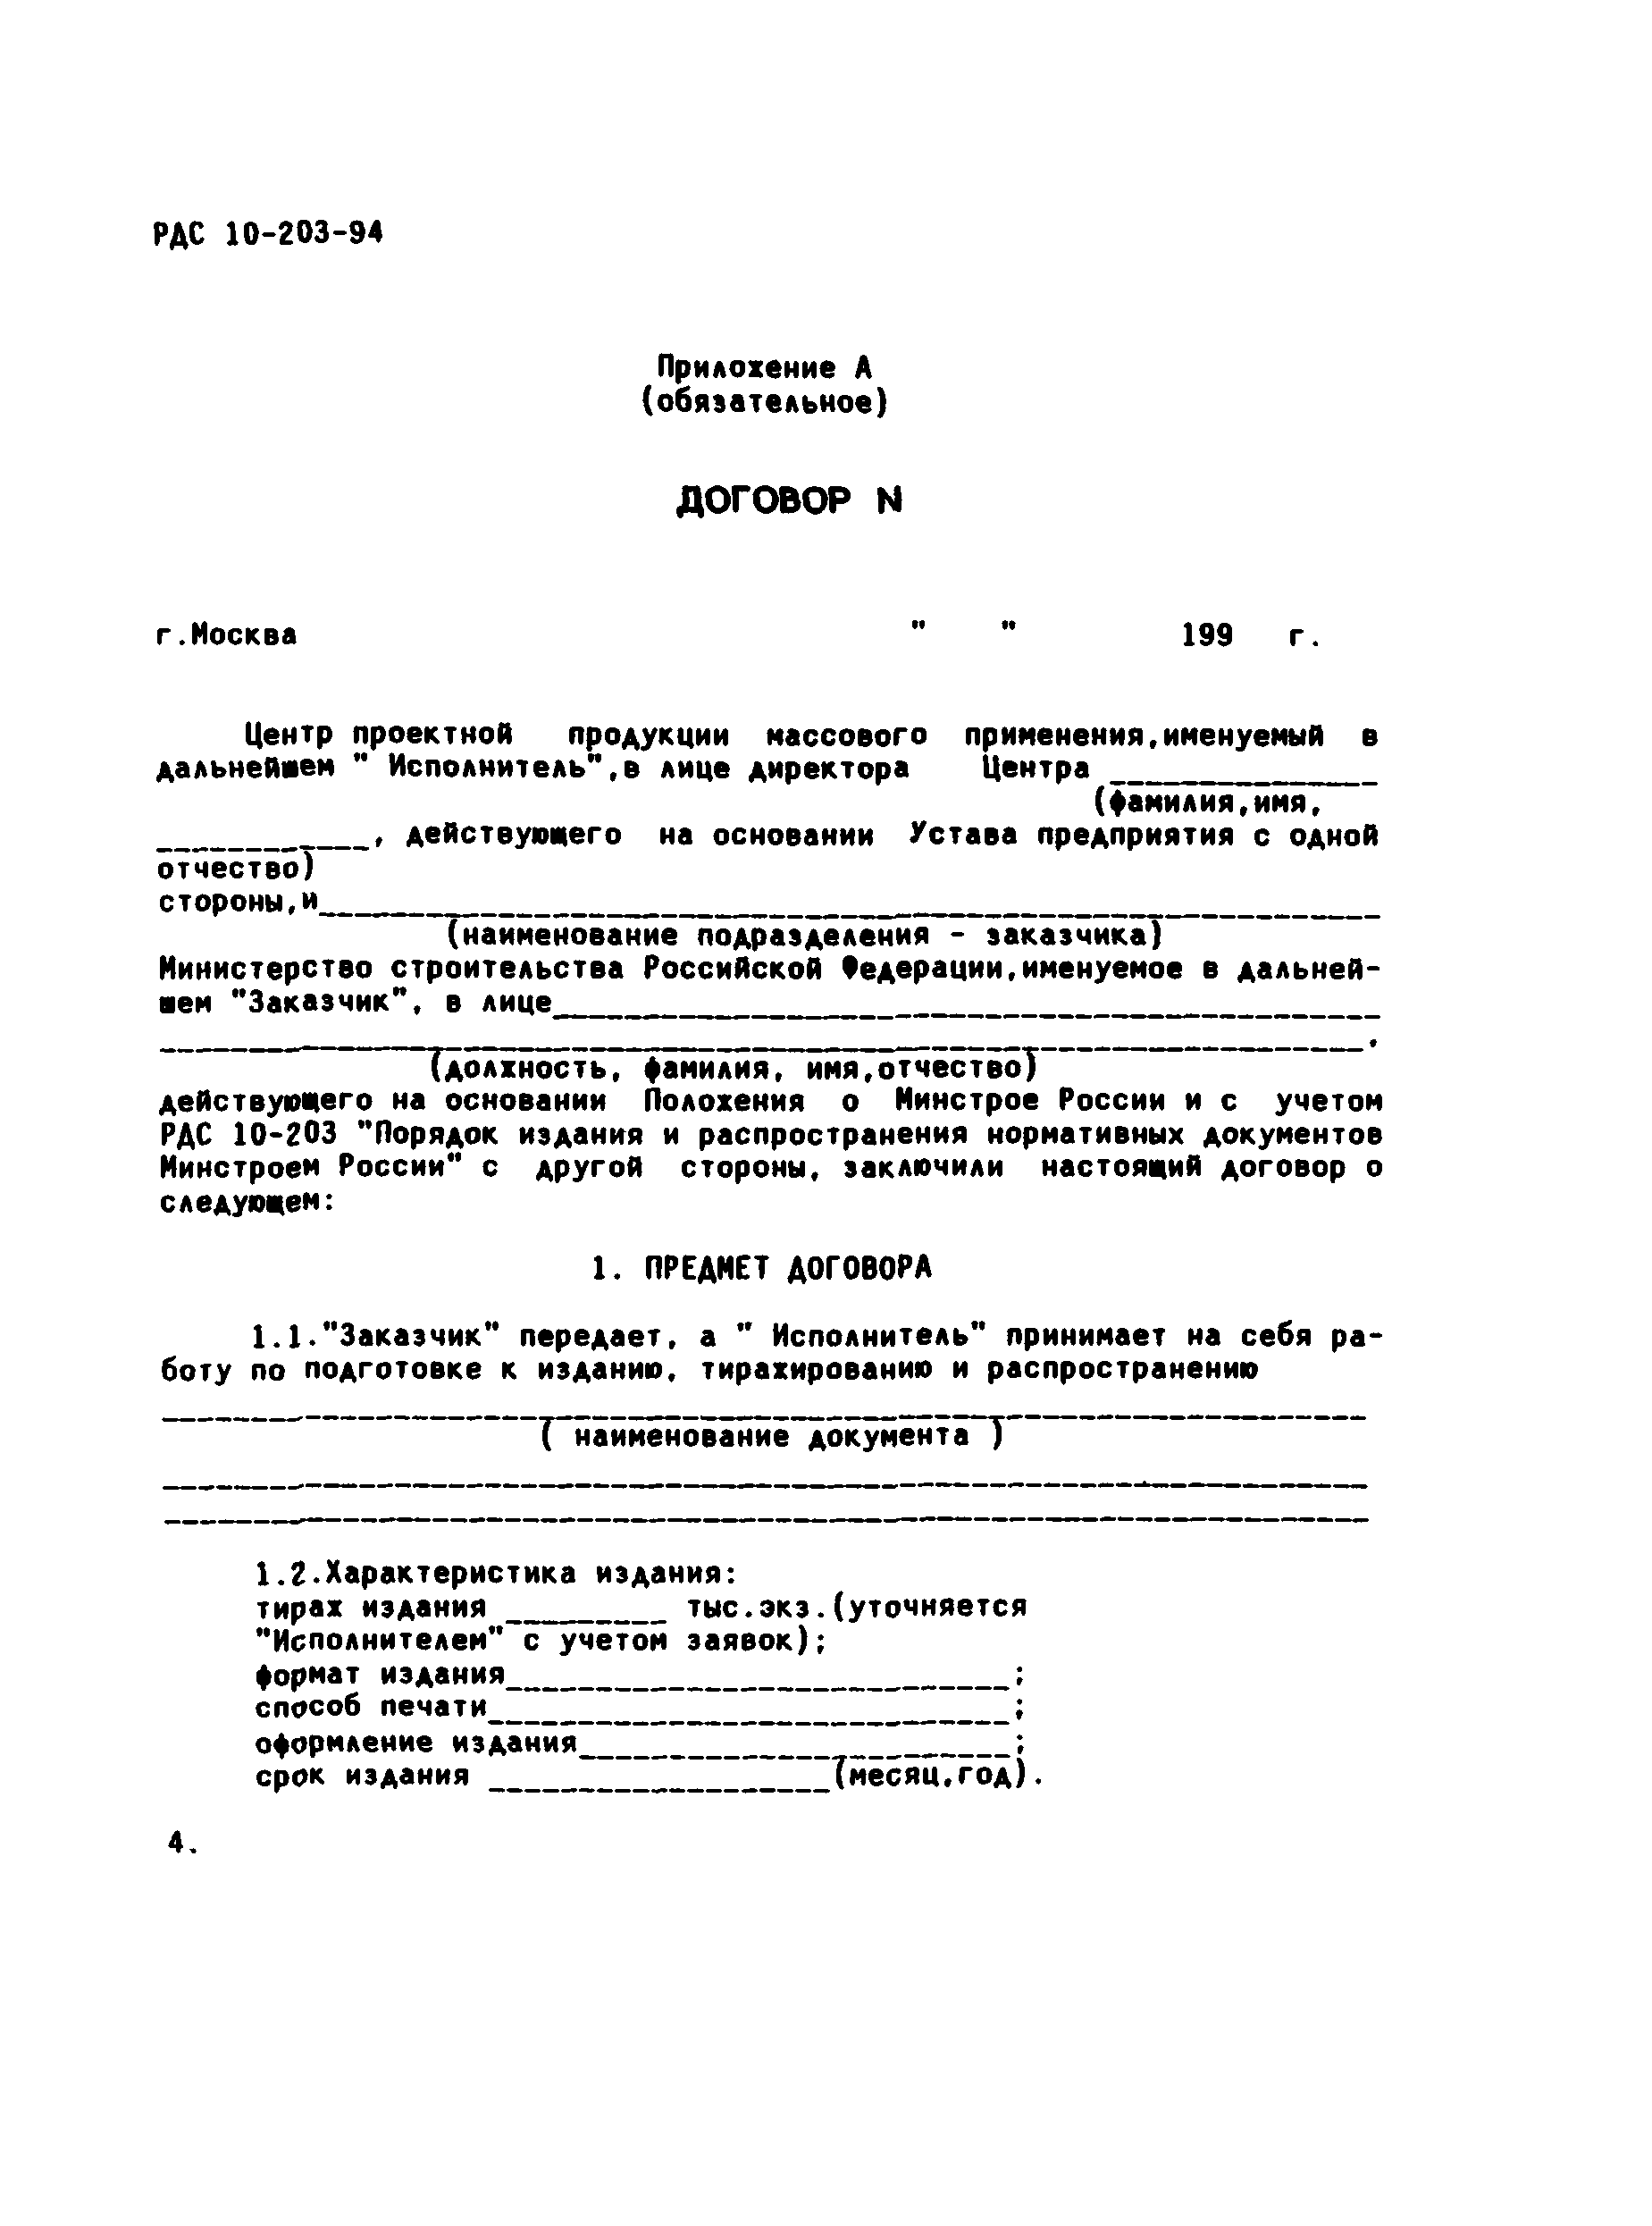 РДС 10-203-94